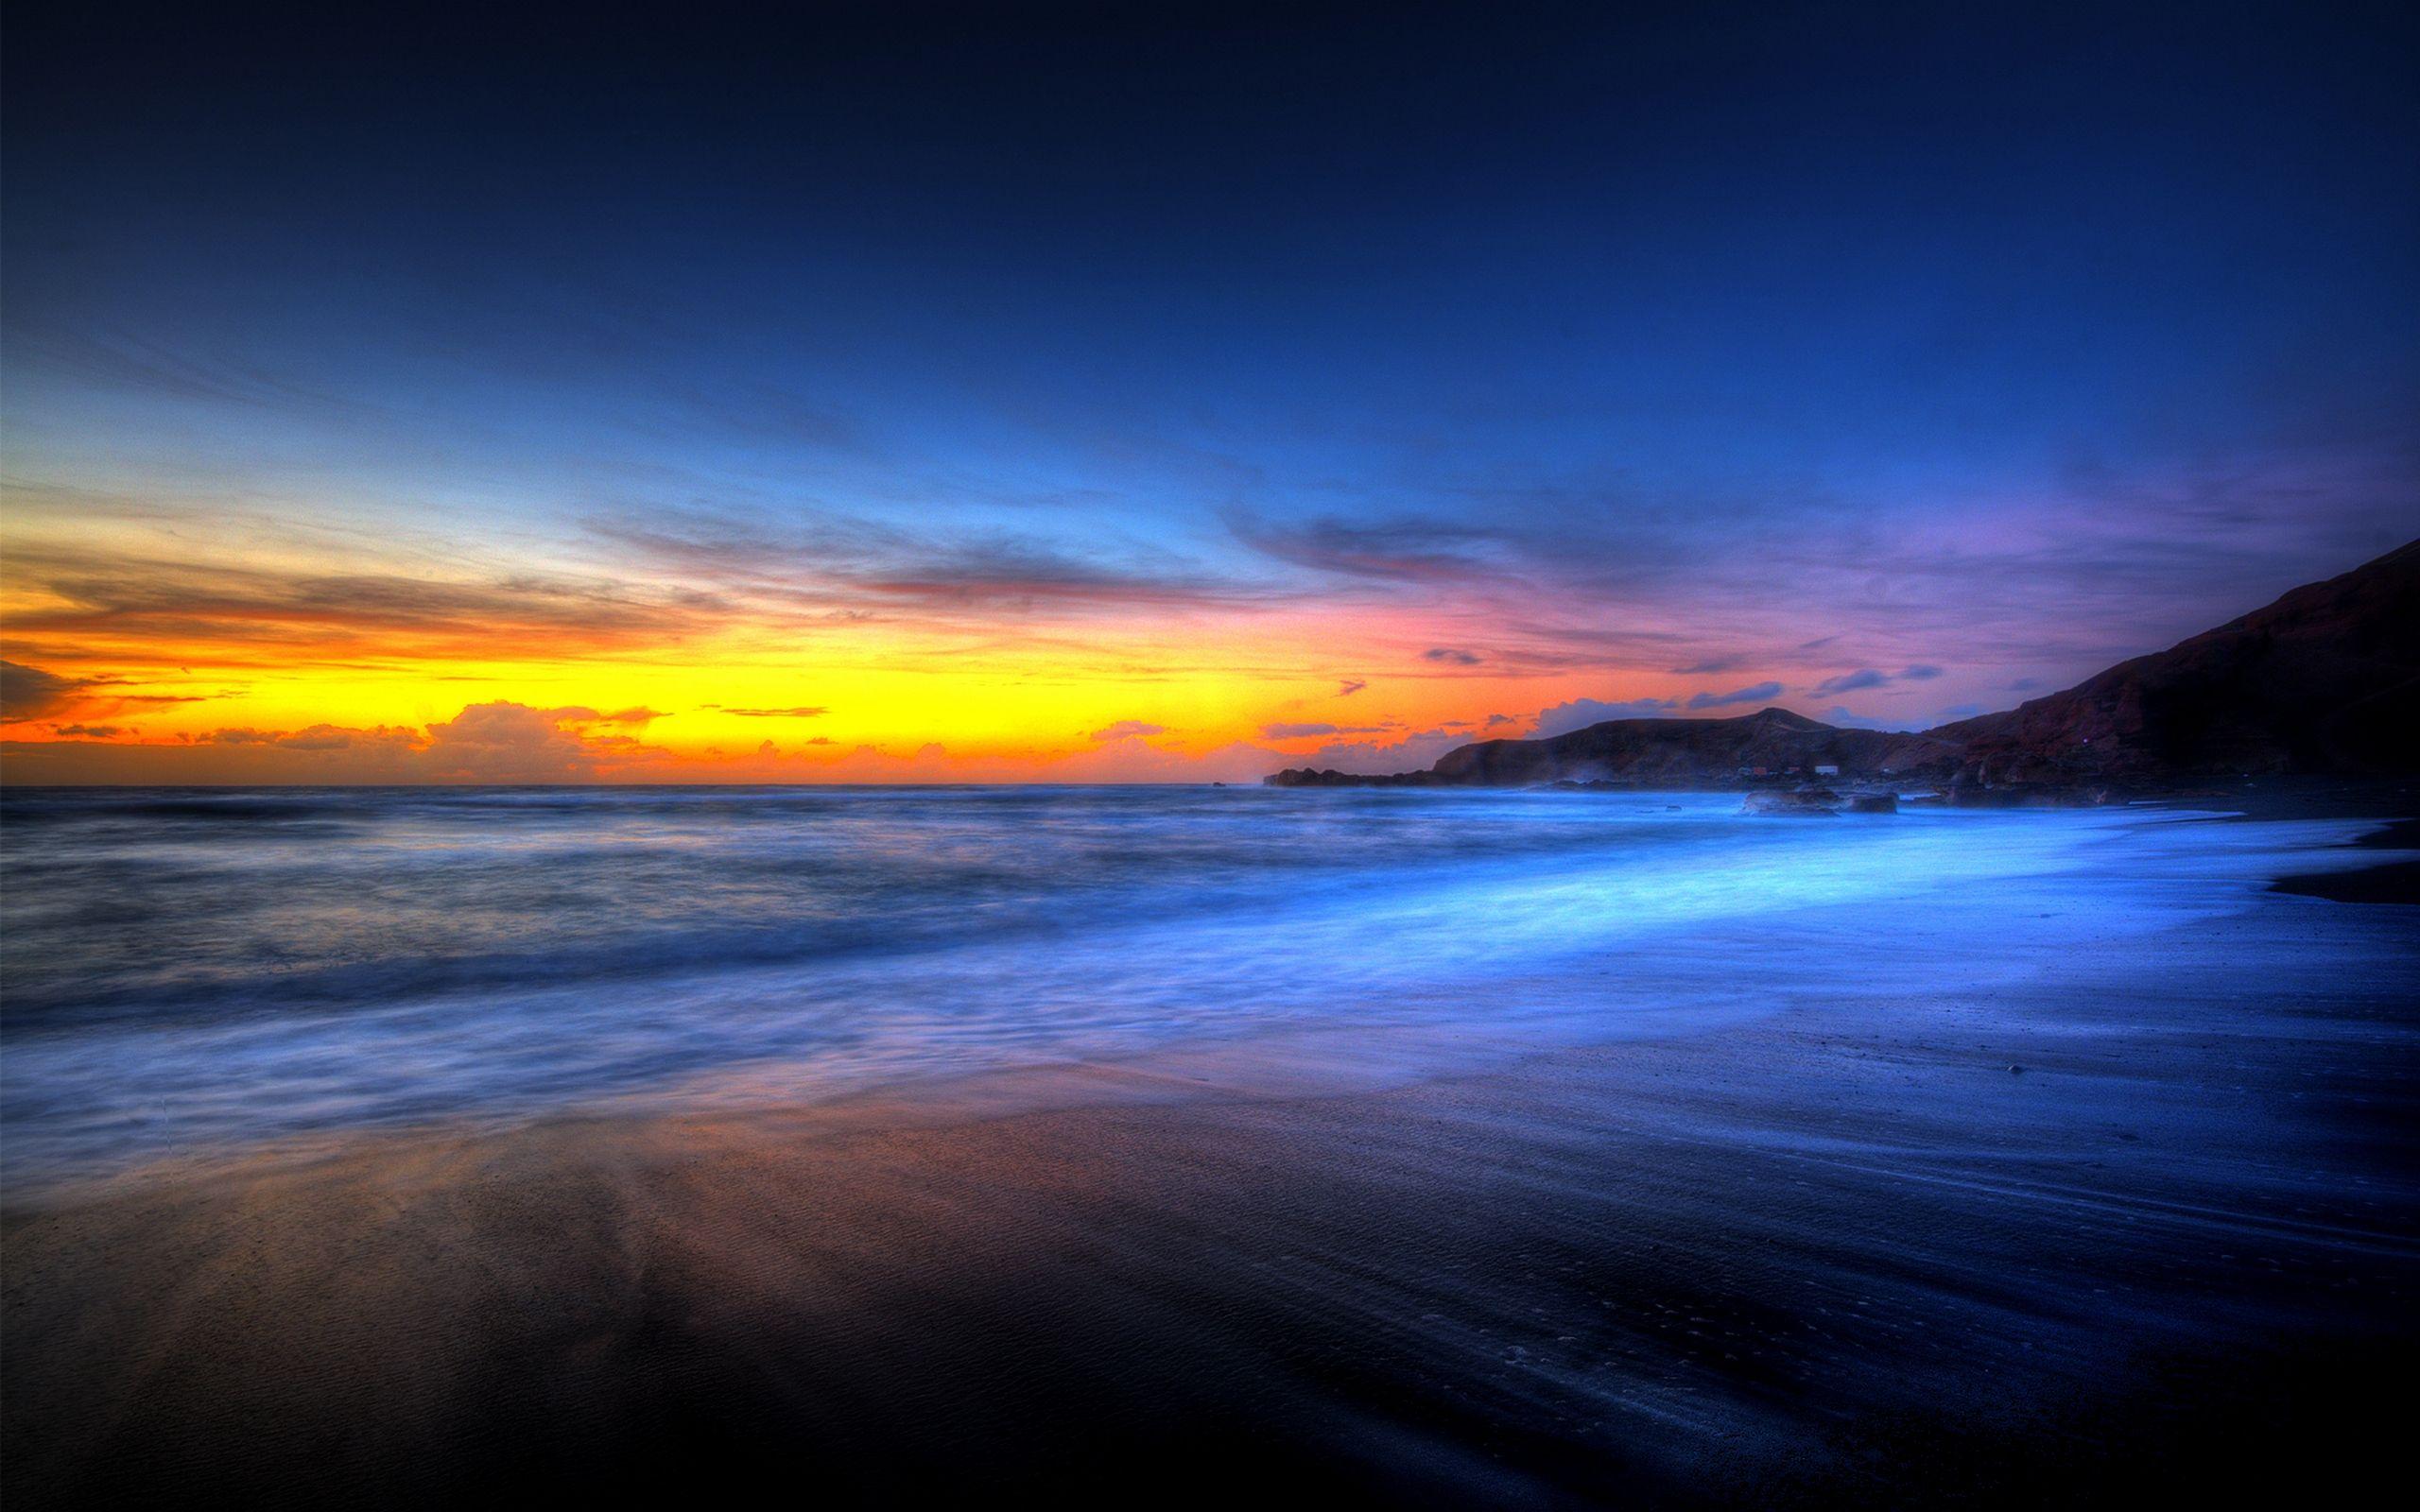 Blue Sunset Beach Wallpapers - Top Free Blue Sunset Beach Backgrounds